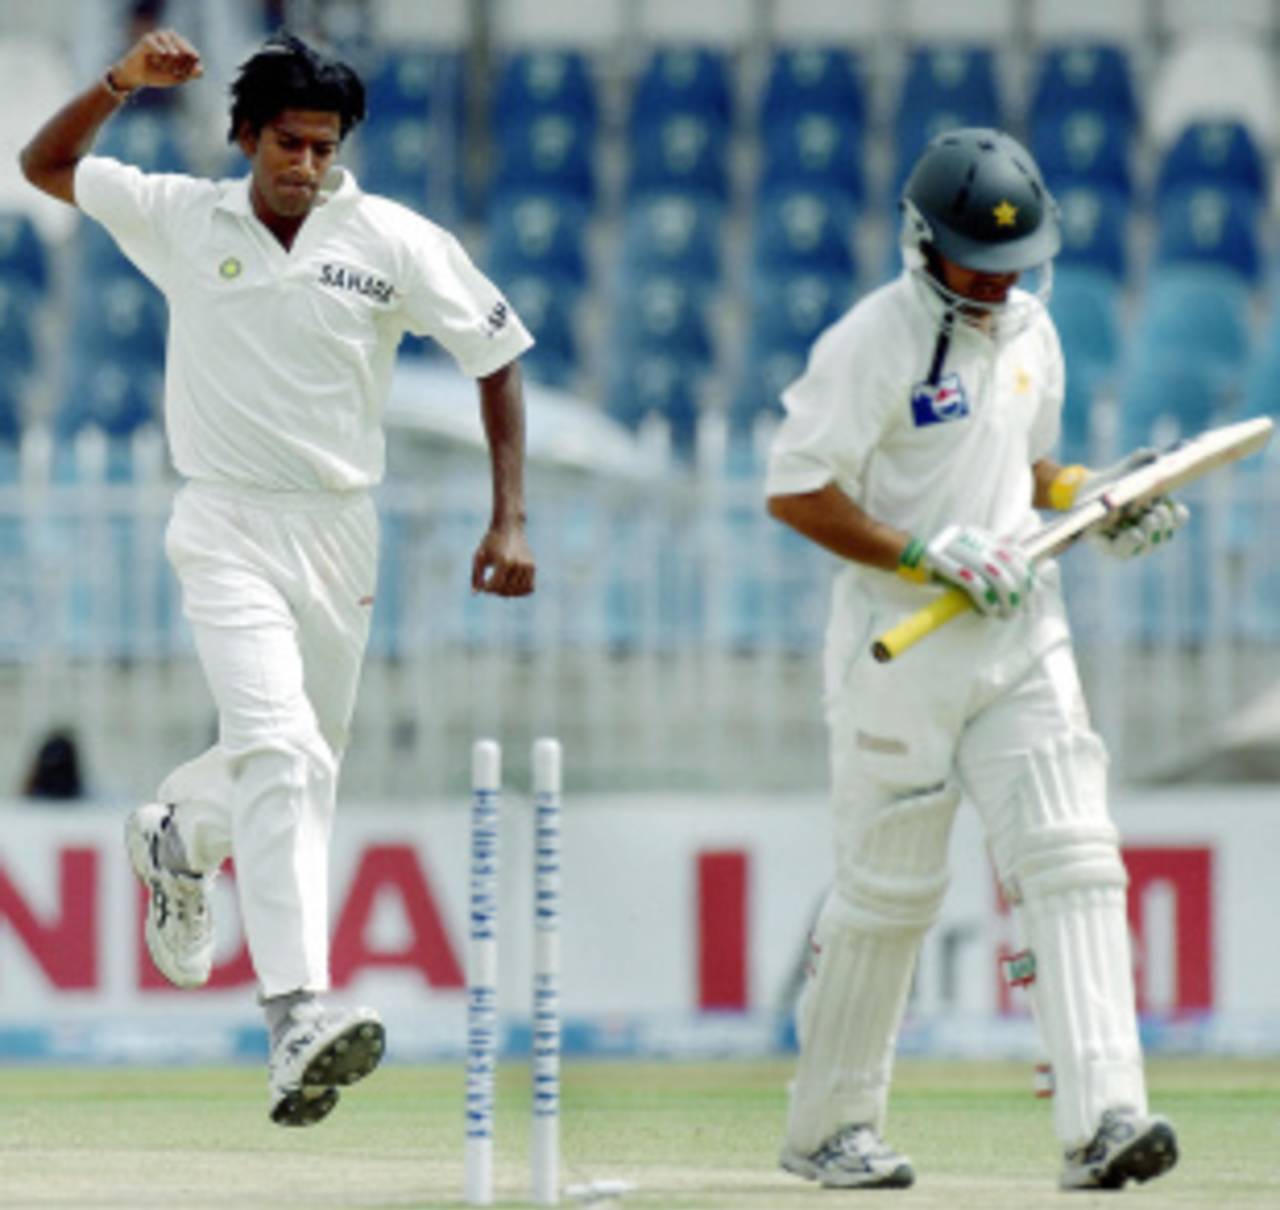 L Balaji's favourite bowled dismissal: uprooting Kamran Akmal's stump in Rawalpindi, 2004&nbsp;&nbsp;&bull;&nbsp;&nbsp;Jewel Samad/AFP